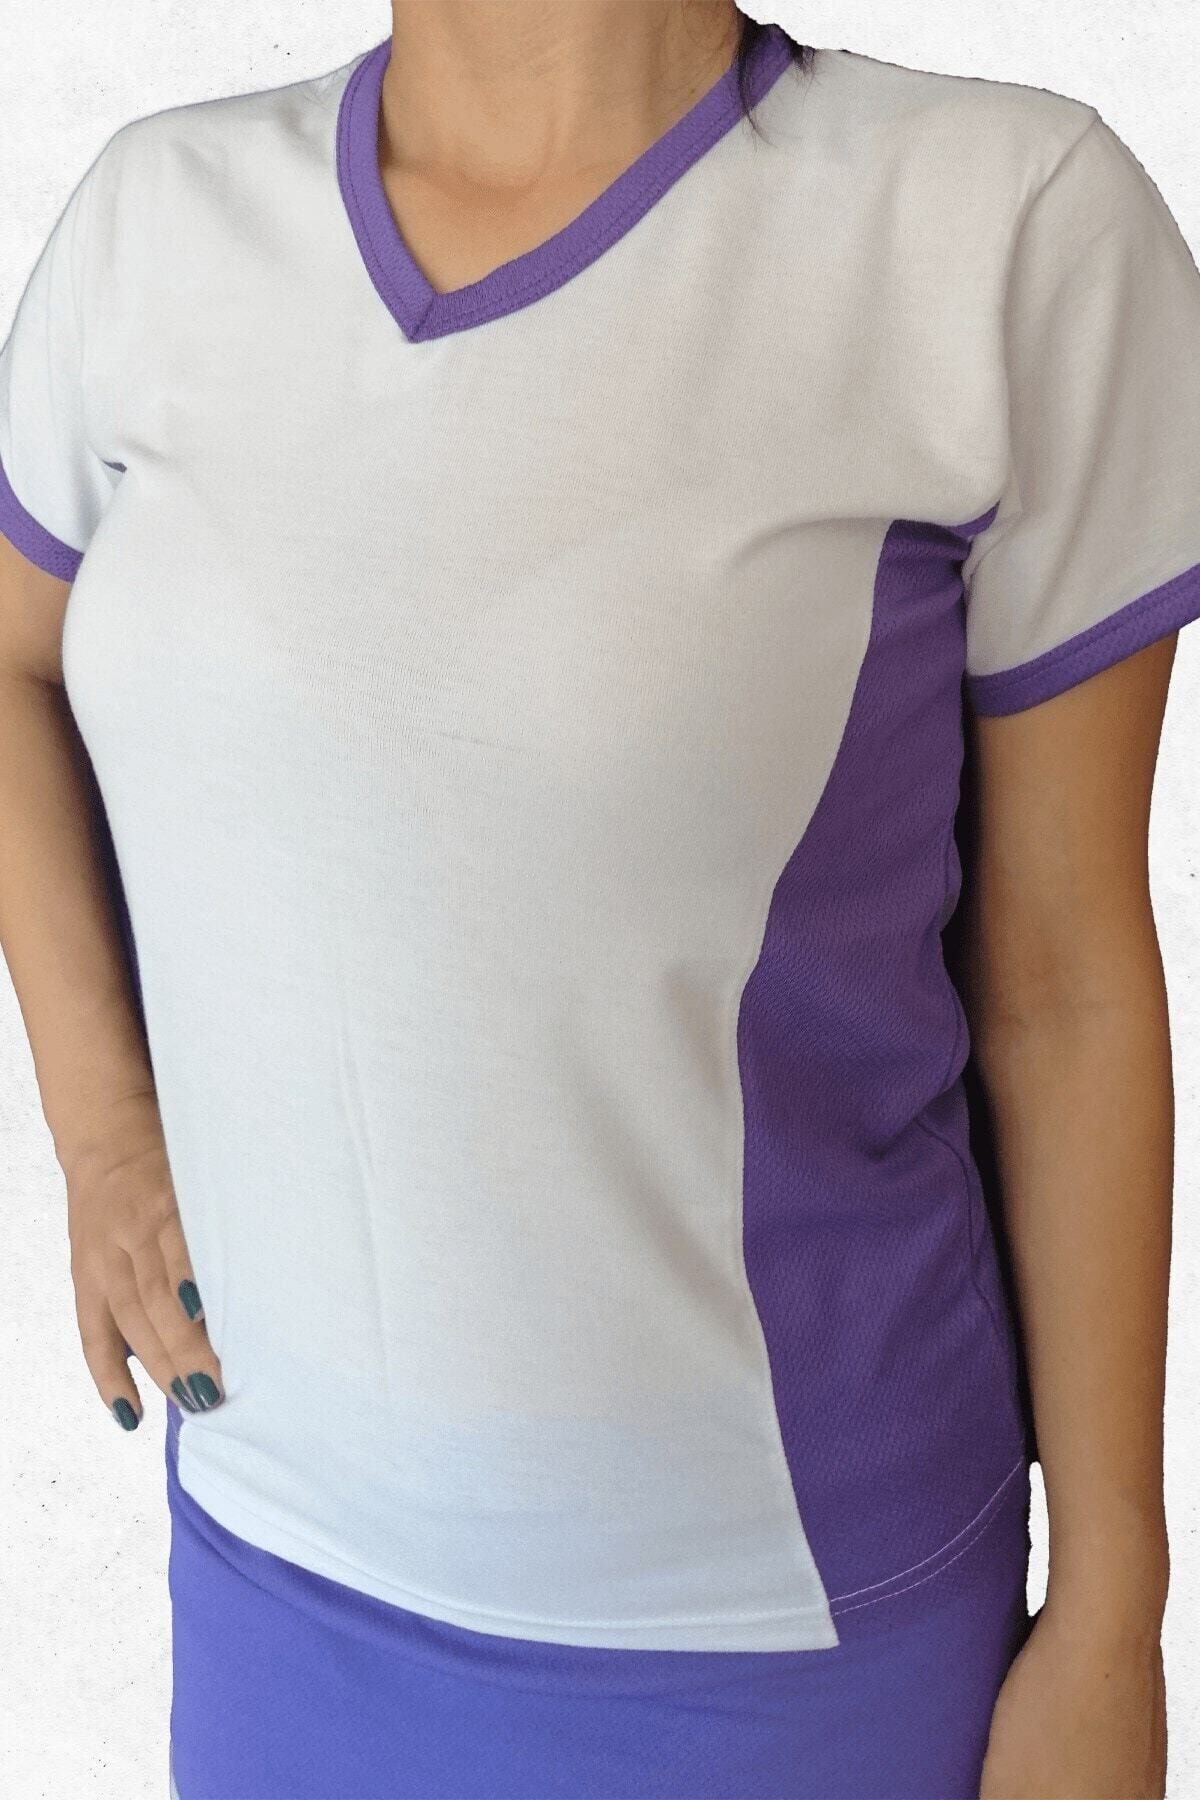 Modapalace Kadın Mor Yanları Mor Modelli  Spor Tişört